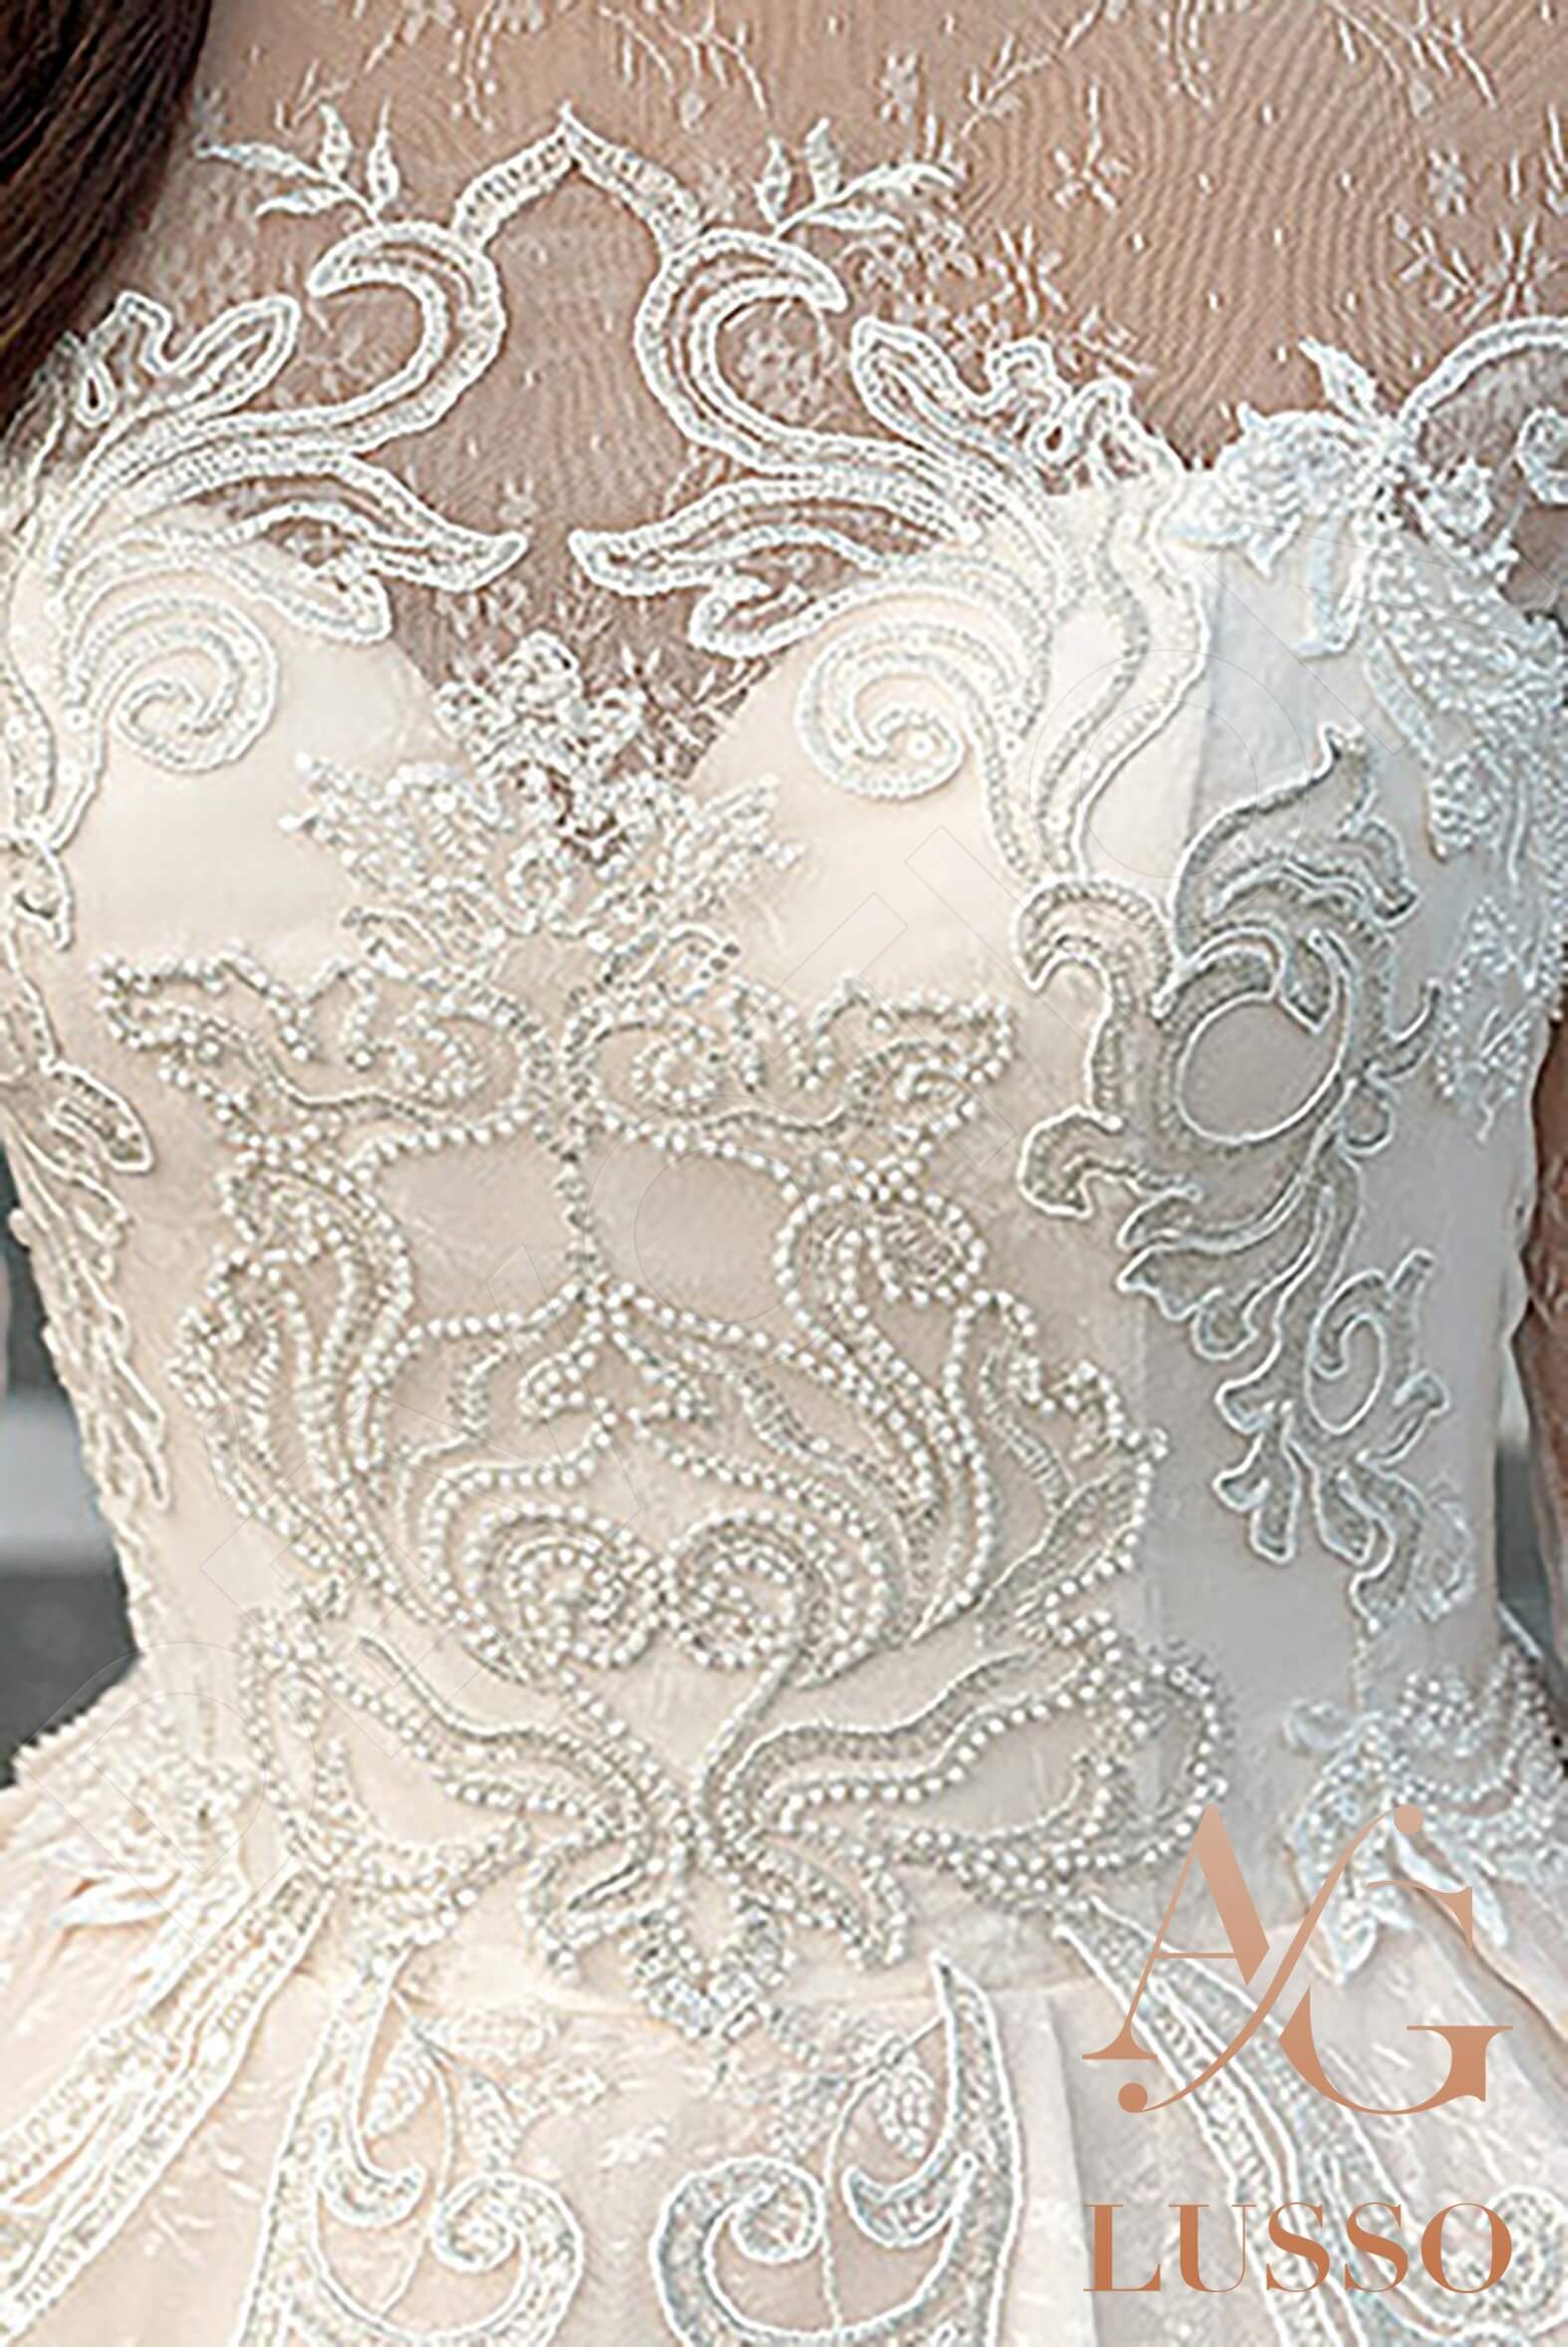 Jizzie Princess/Ball Gown Jewel Ivory Wedding dress